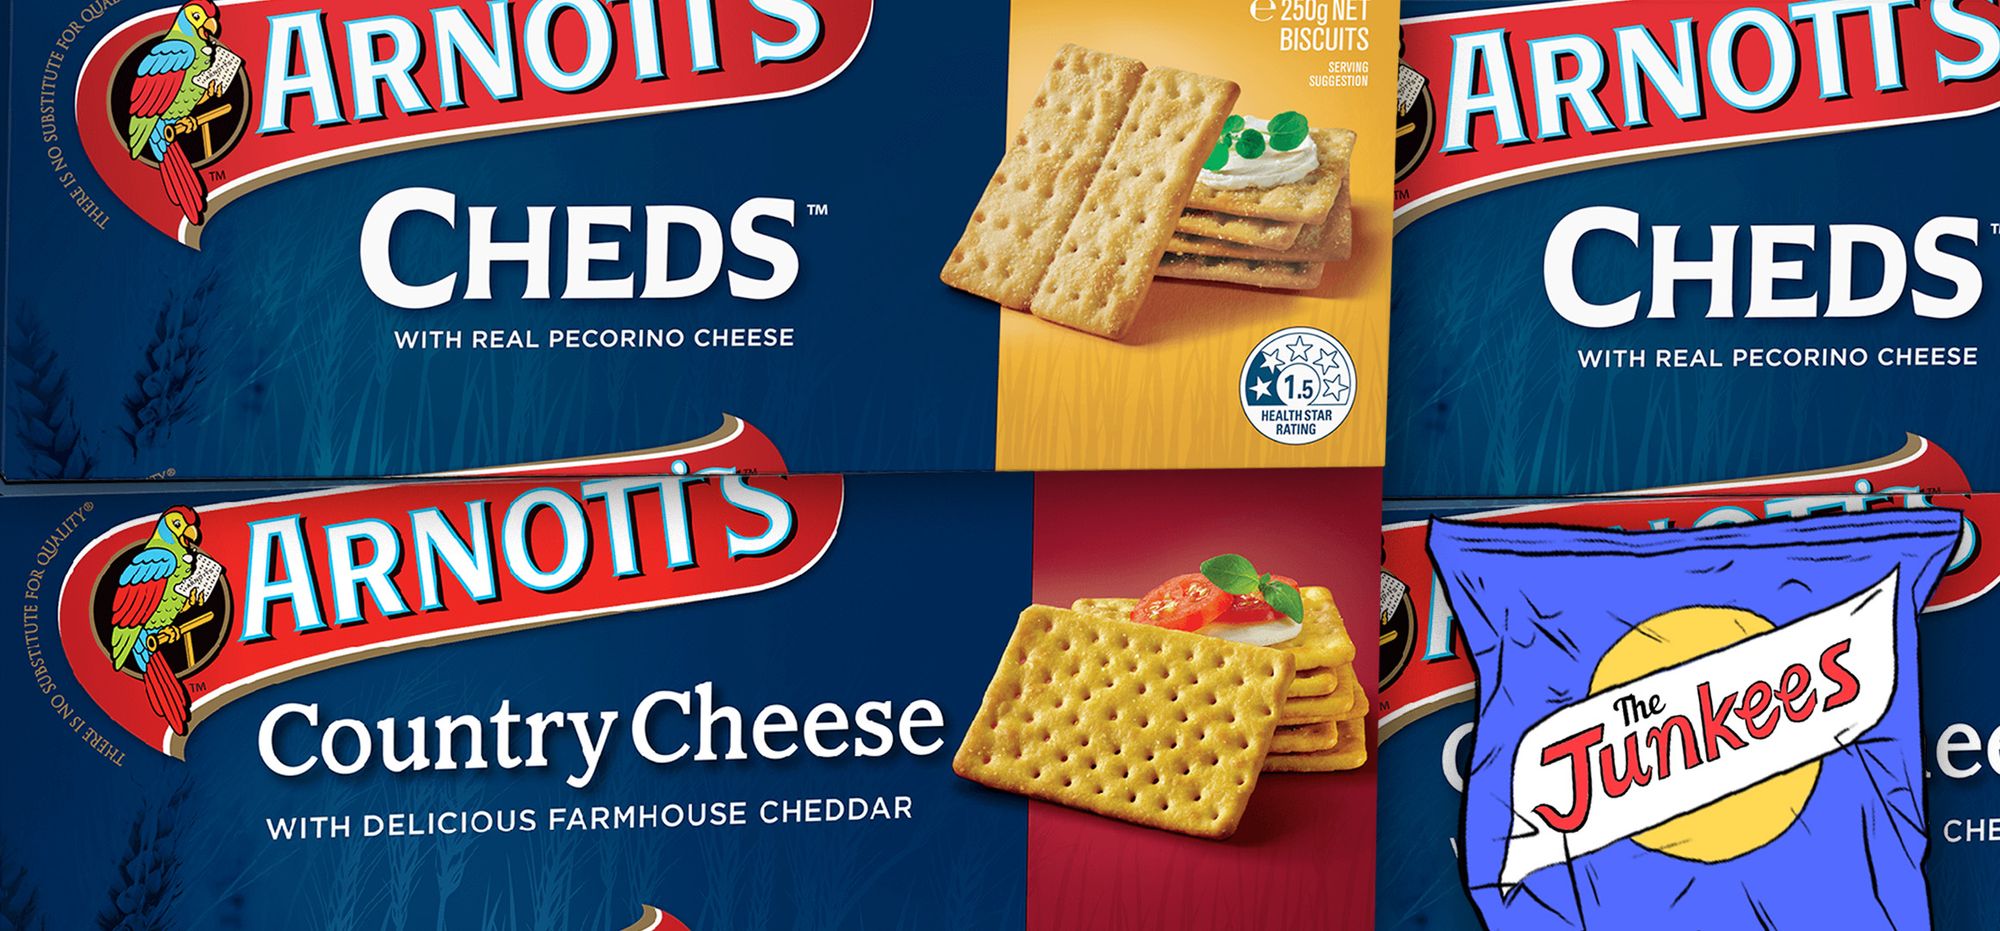 Cheese Biscuits Arnott's Derby